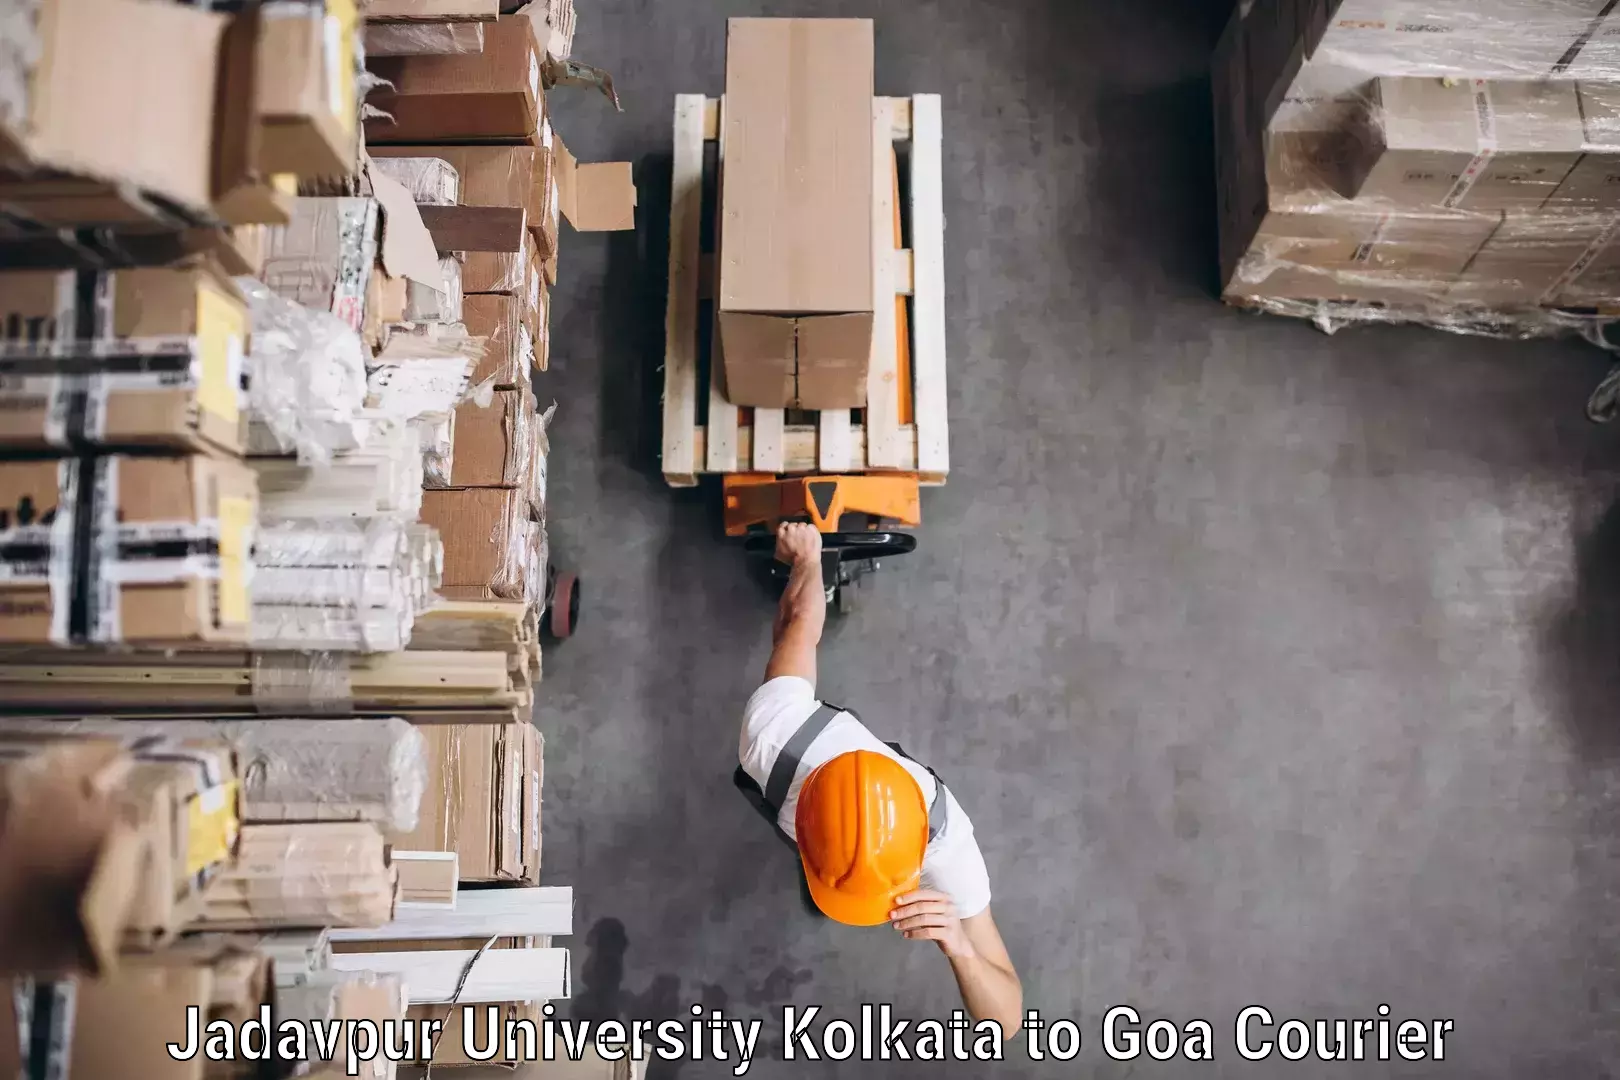 Door-to-door freight service Jadavpur University Kolkata to Goa